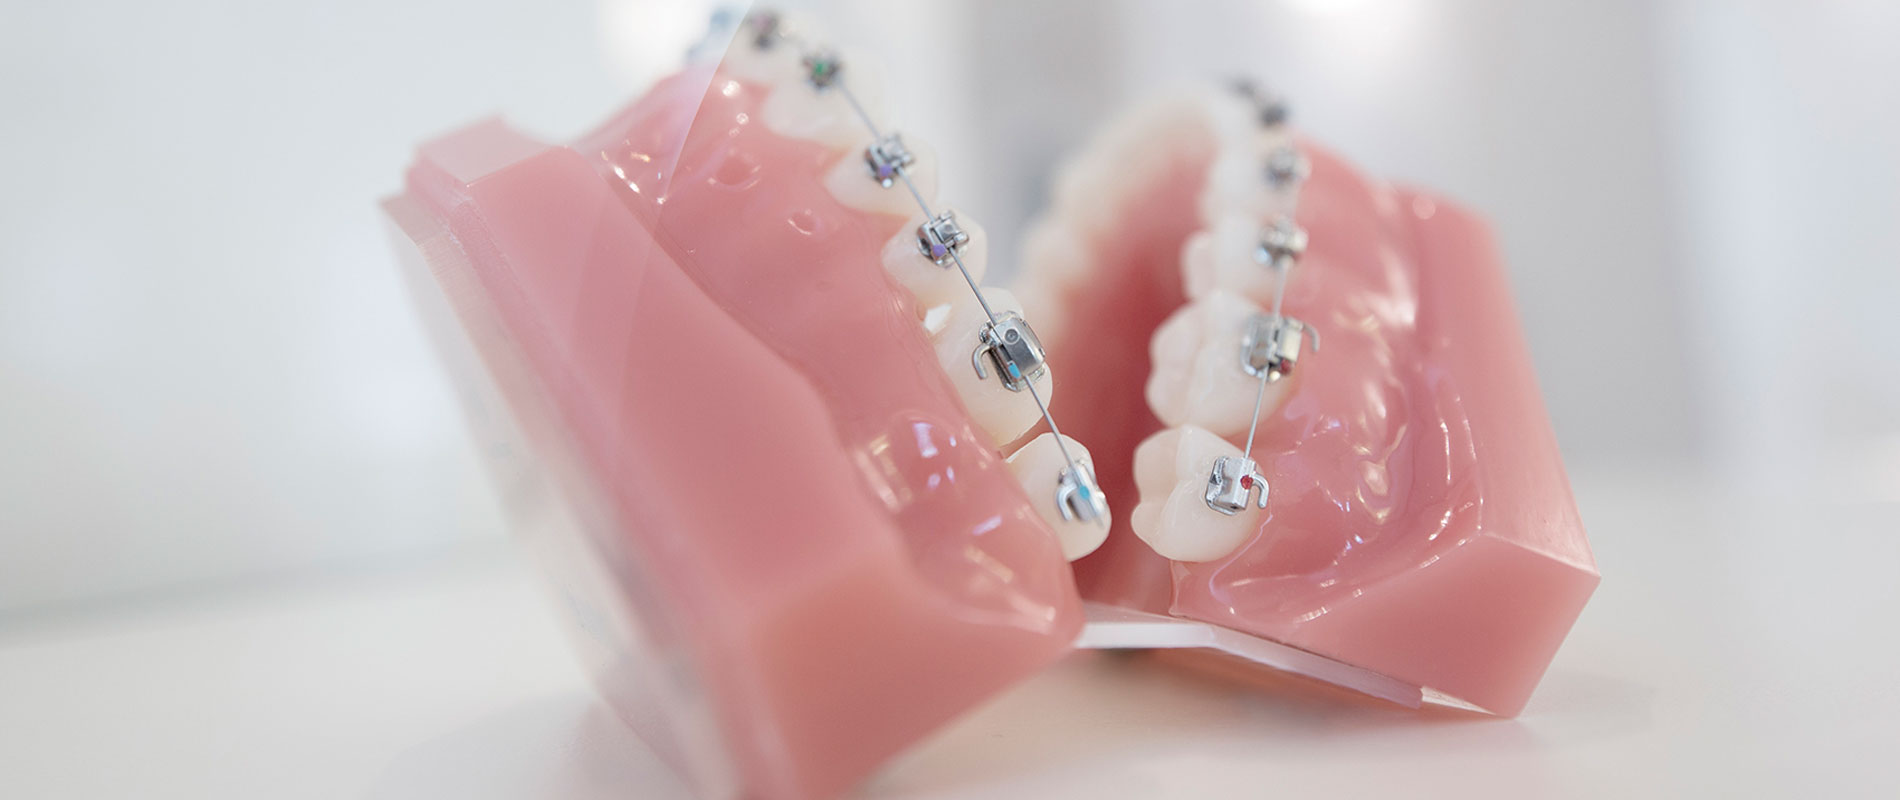 Kieferorthopädie ohne Zähne ziehen, Dr. Lederer München